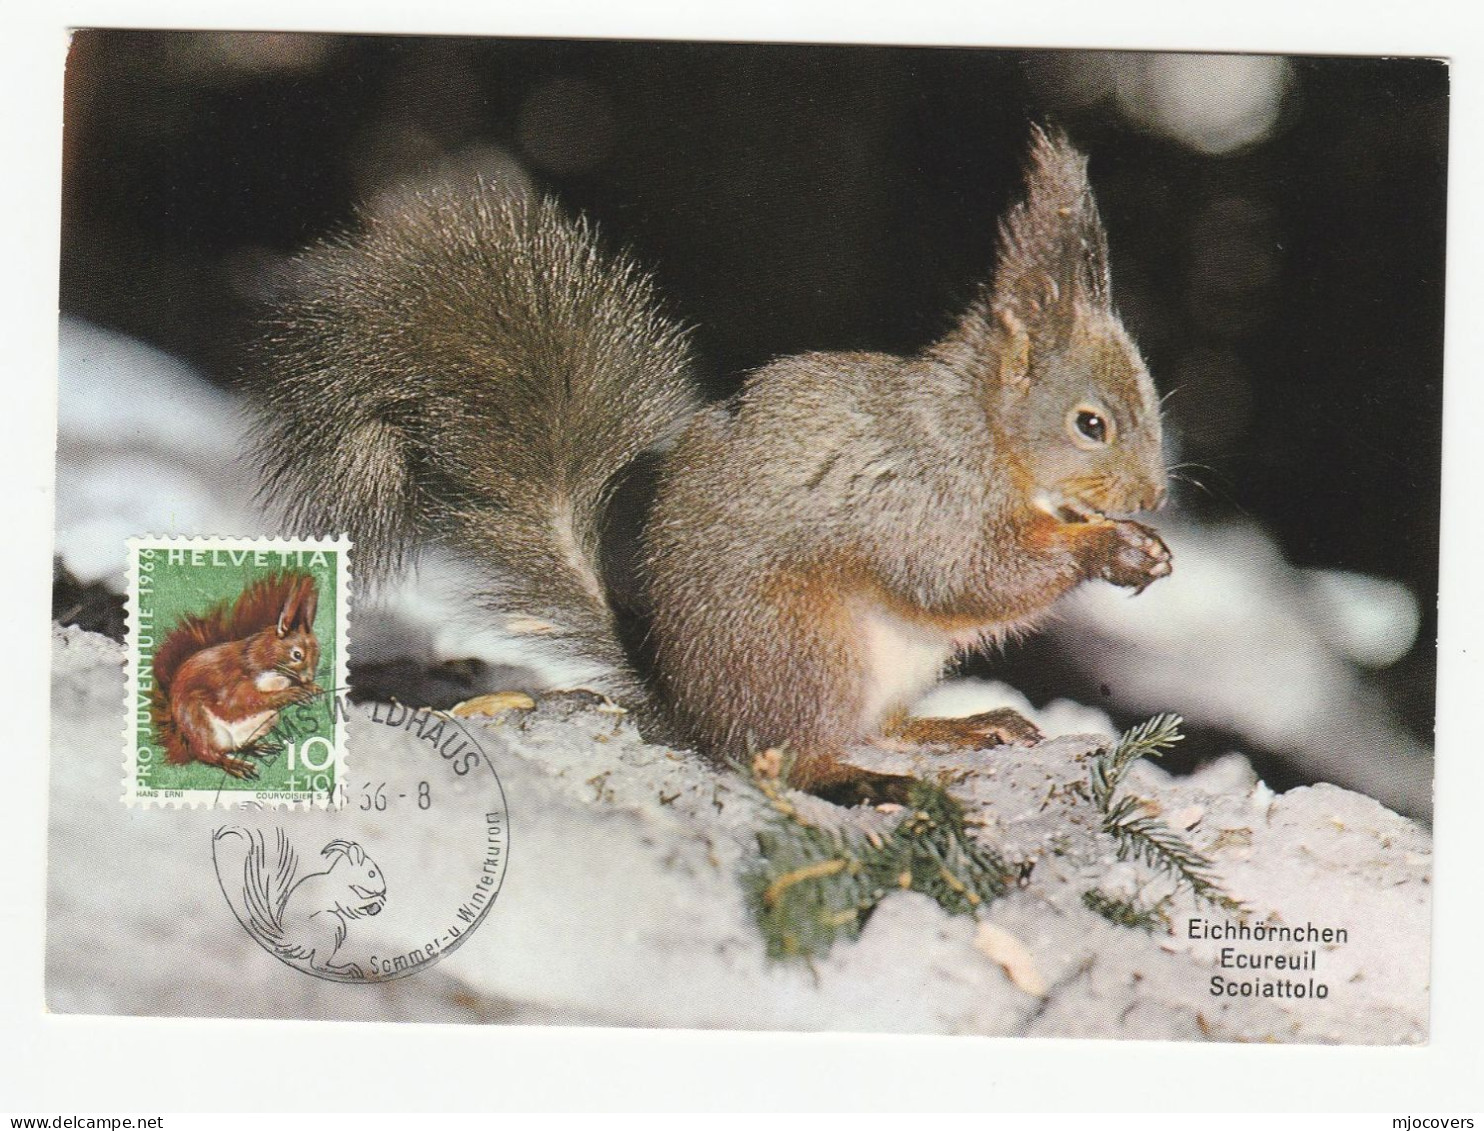 1966 SQUIRREL Maximum CARD Switzerland Stamps Fdc Cover Postcard - Maximum Cards